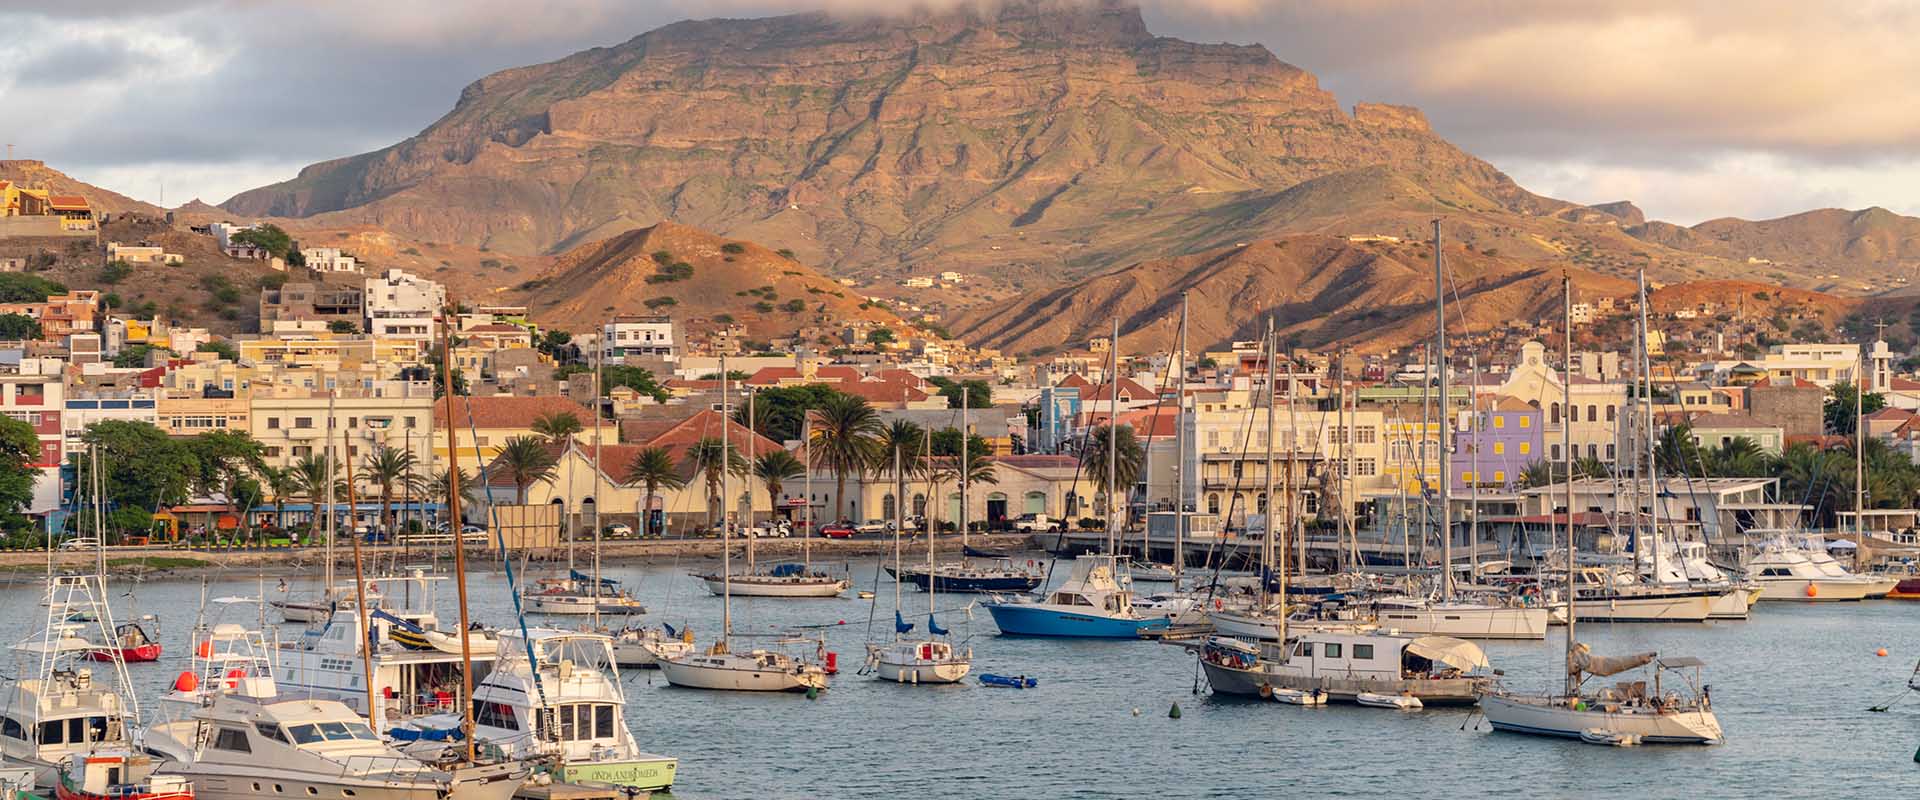 Cruceros de Aventura en Cape Verde - LiveAboard.com